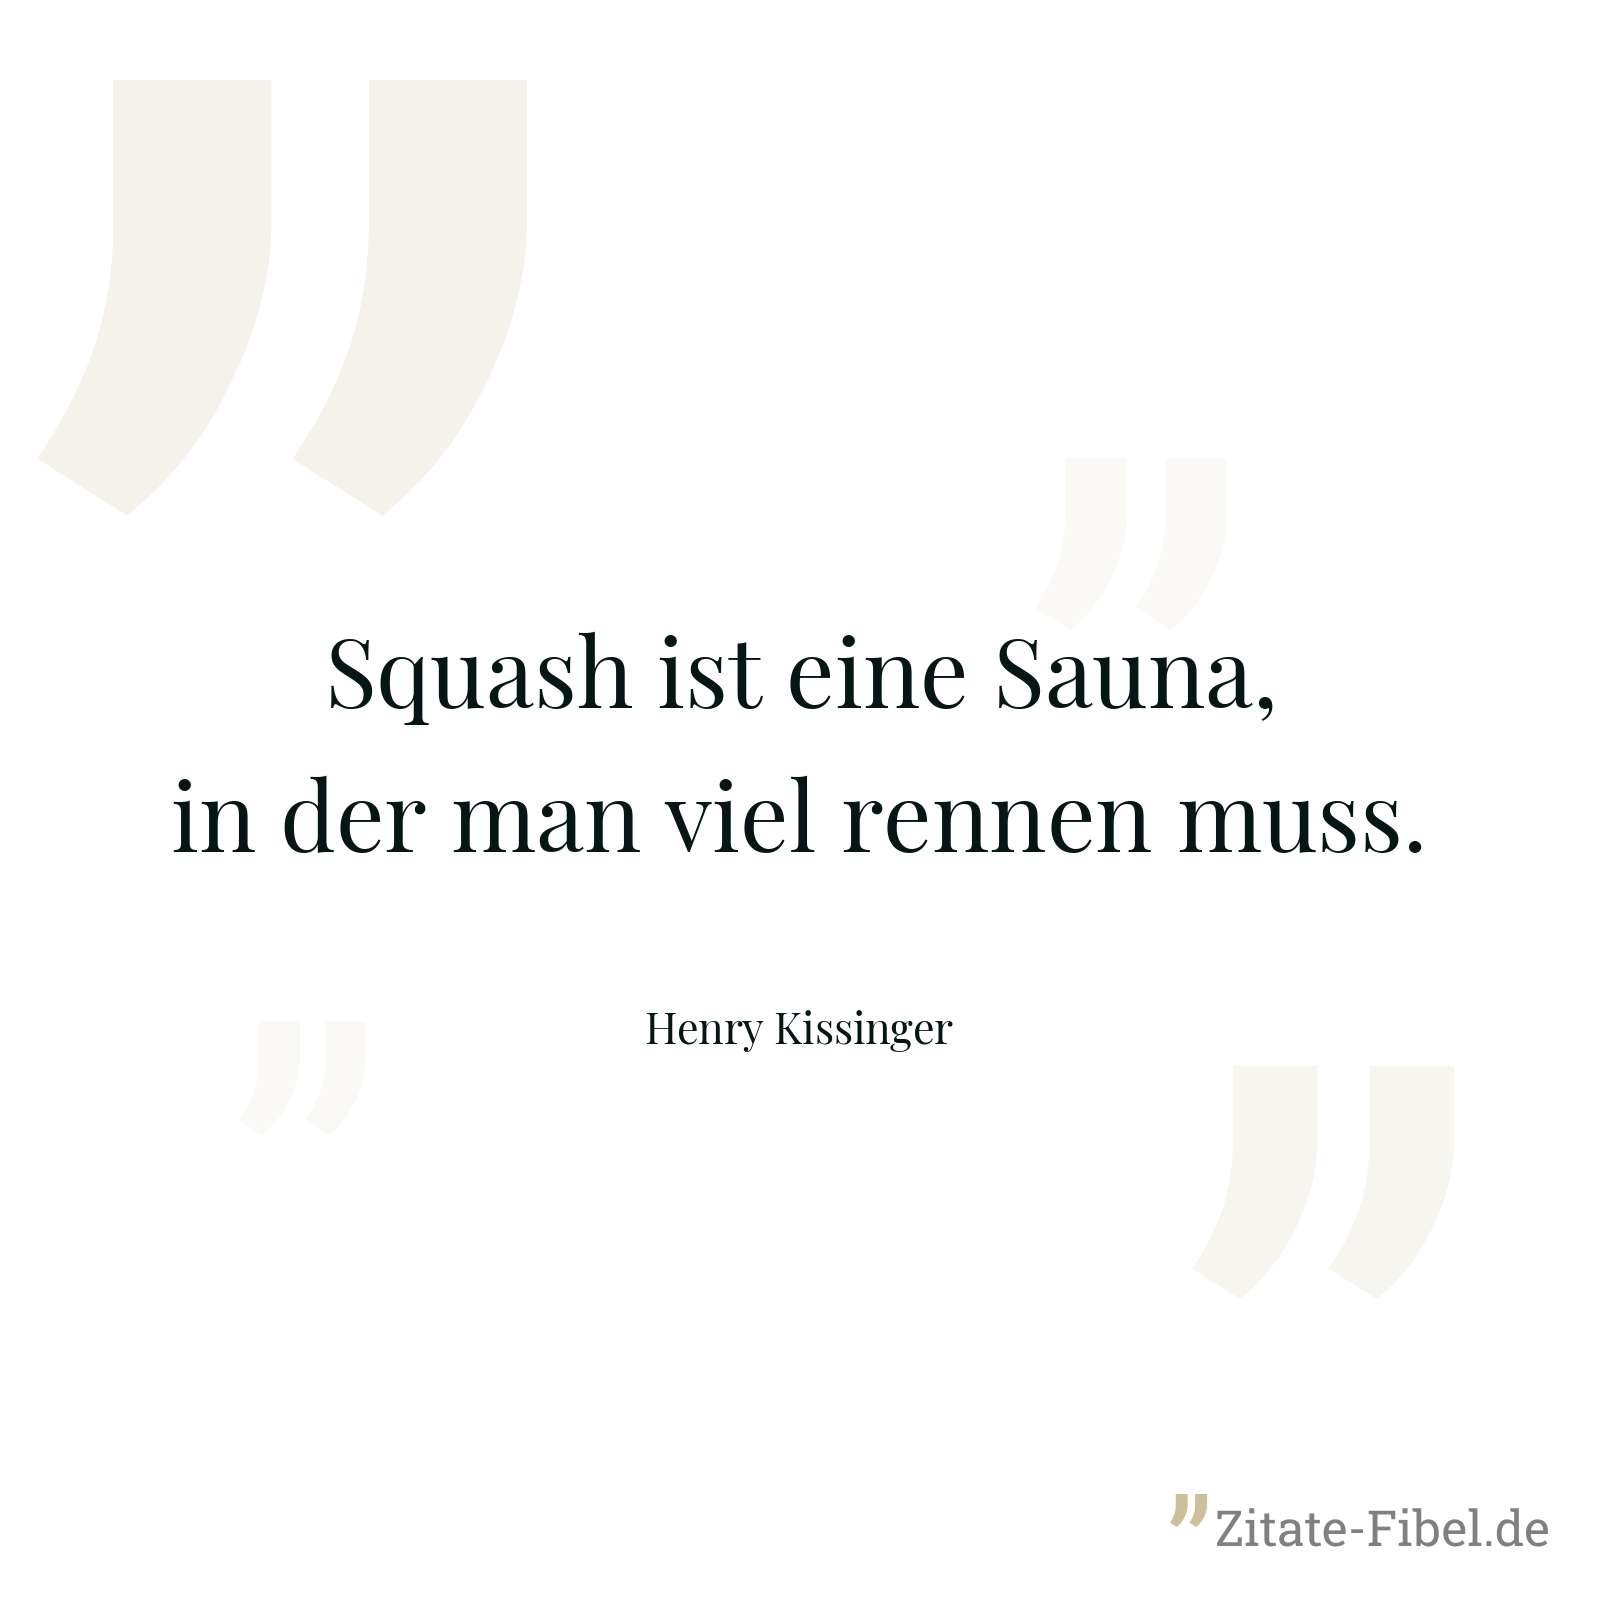 Squash ist eine Sauna, in der man viel rennen muss. - Henry Kissinger